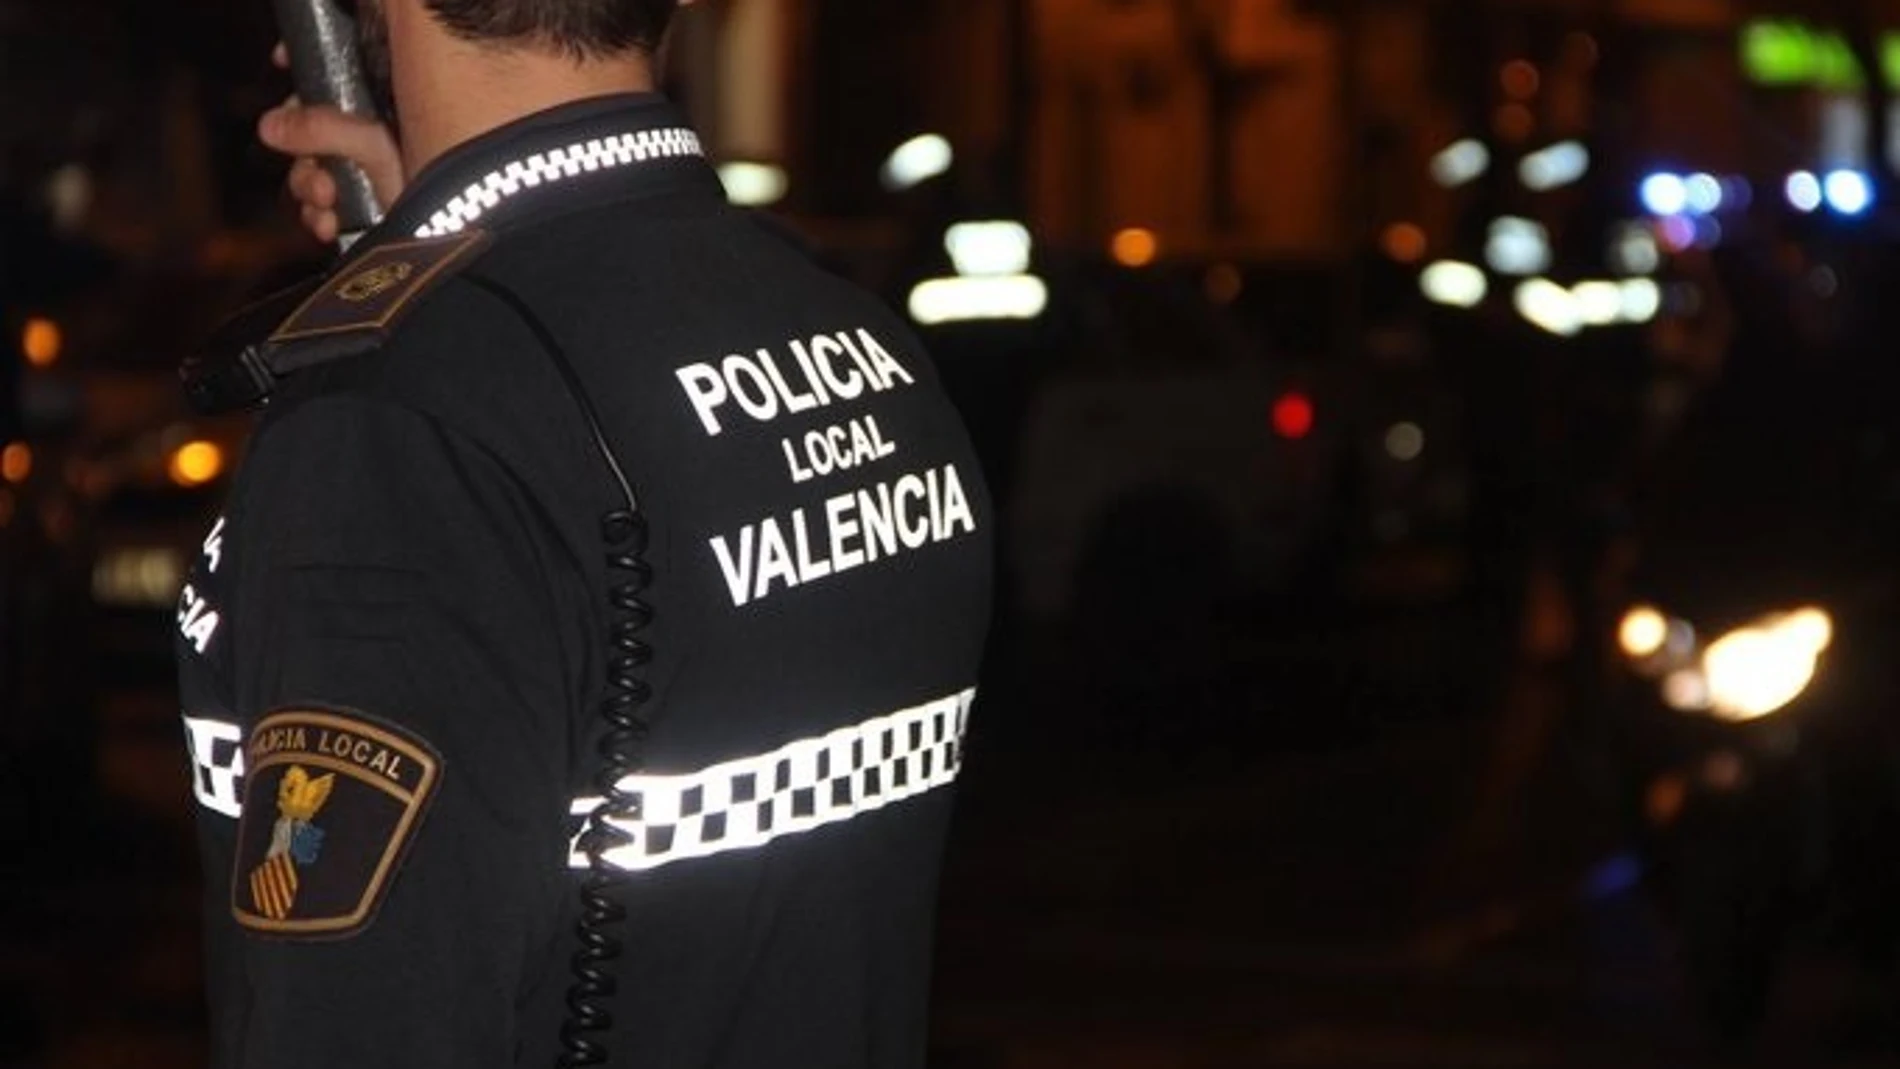 Valencia.-Sucesos.- La Policía detiene a un hombre acusado de tirar al suelo y agredir a su pareja